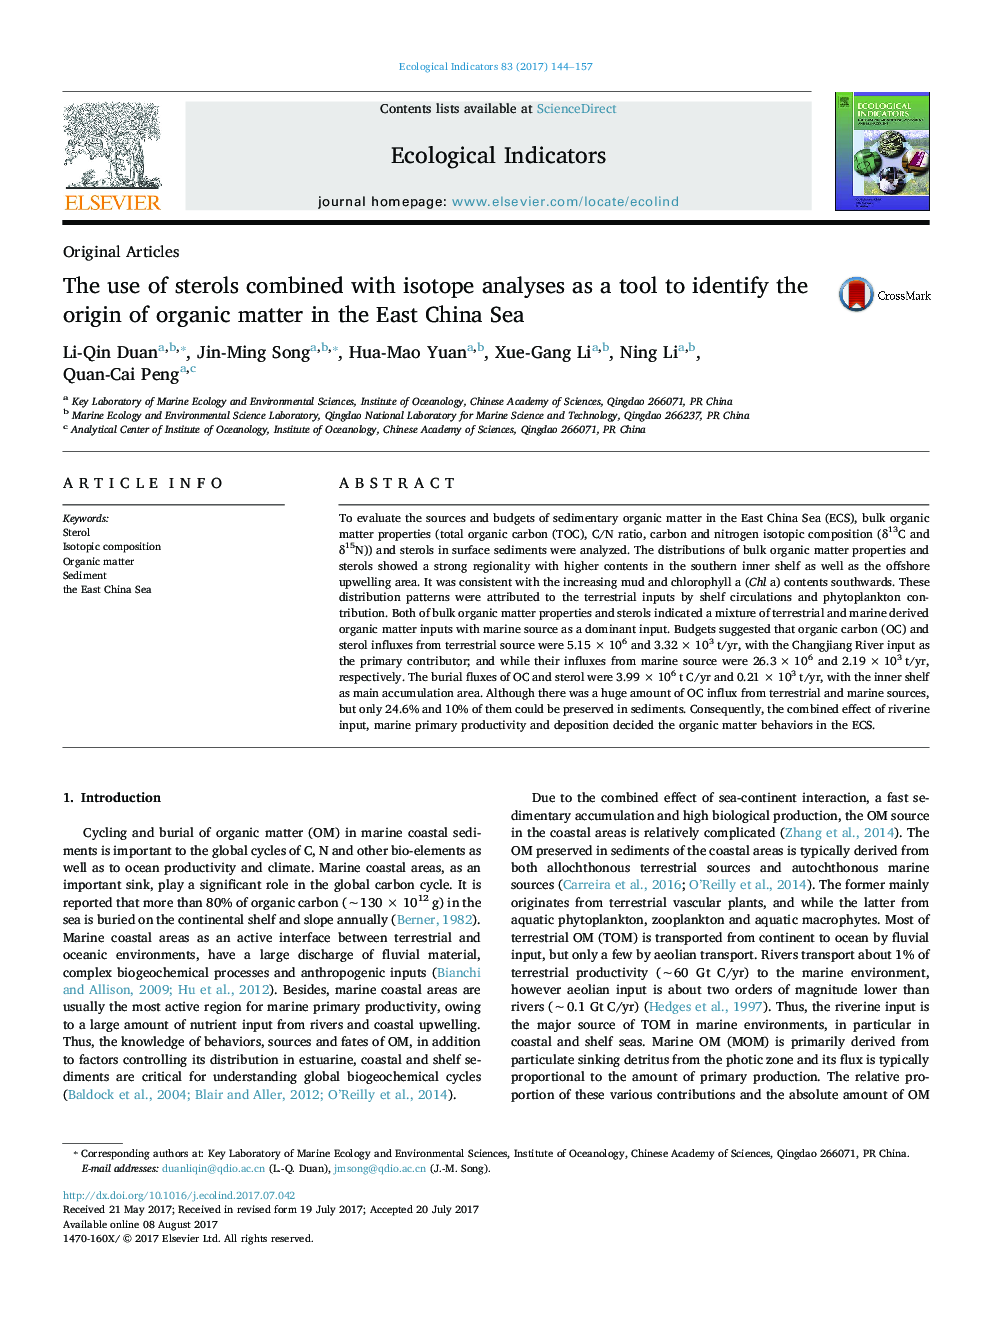 مقالات اصلی استفاده از استرول ها با تجزیه و تحلیل ایزوتوپ ها به عنوان یک ابزار برای شناسایی منشا مواد آلی در دریای چین شرقی 